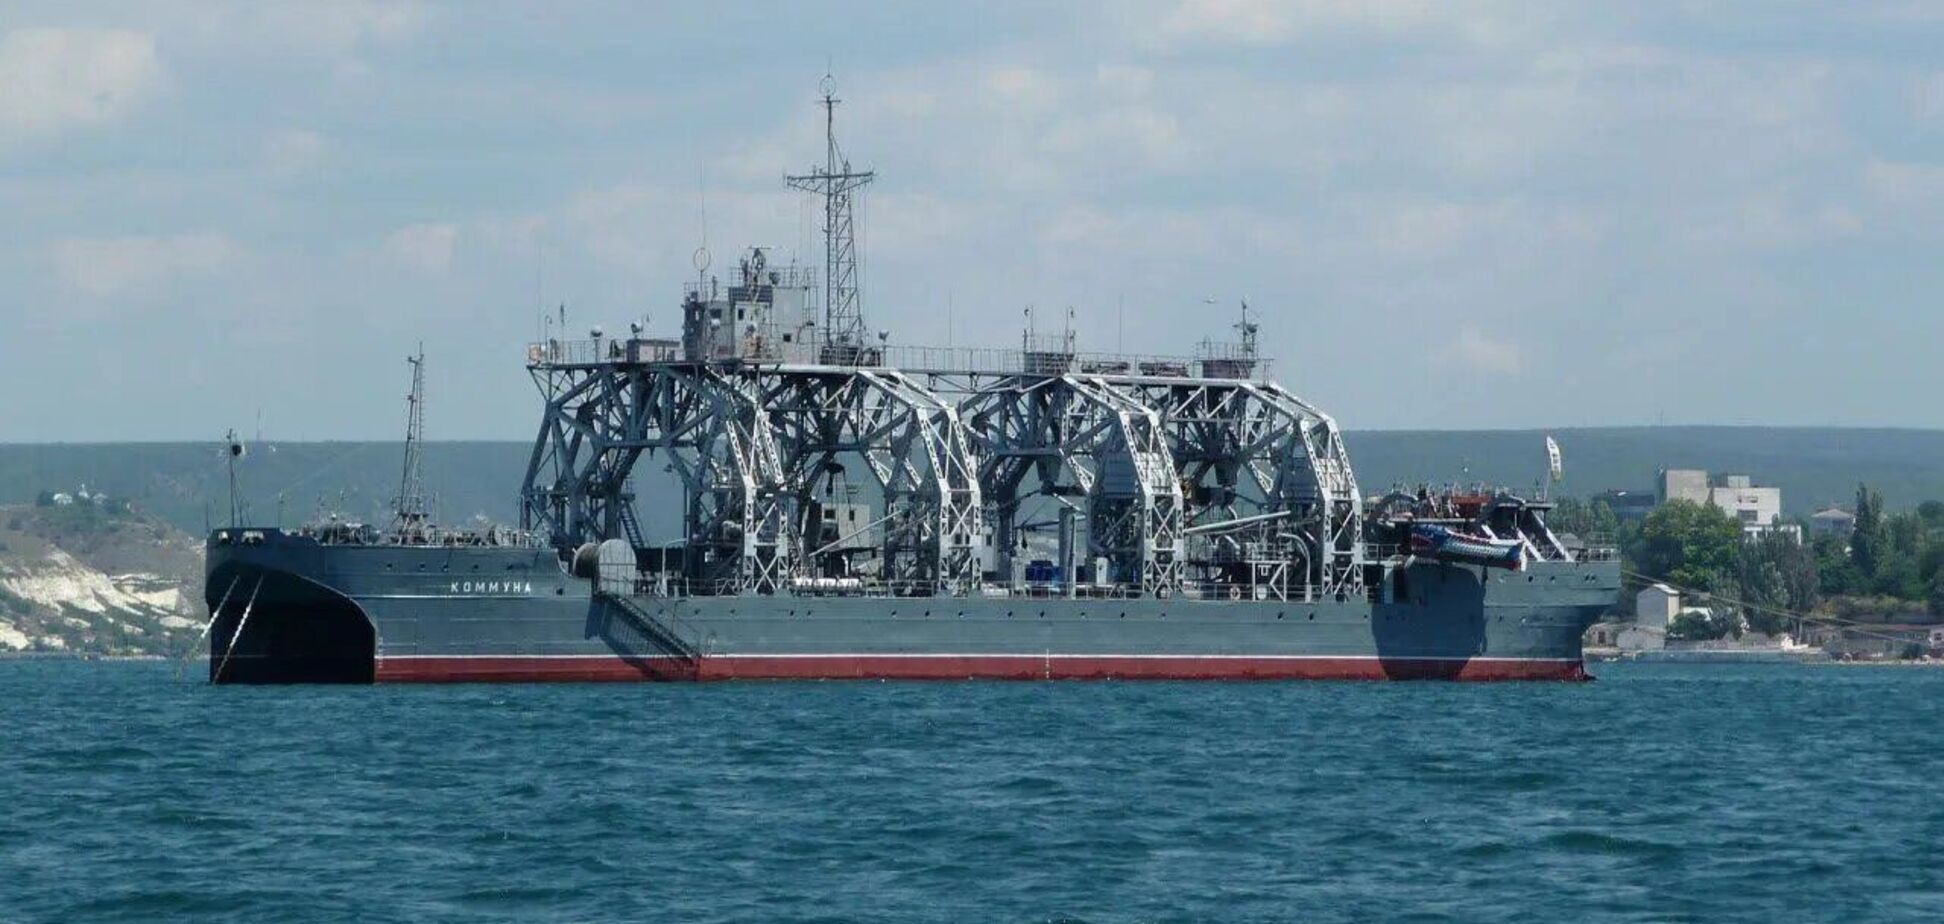 Пощечина для России: всплыла символическая деталь о корабле 'Коммуна', по которому попали ВСУ